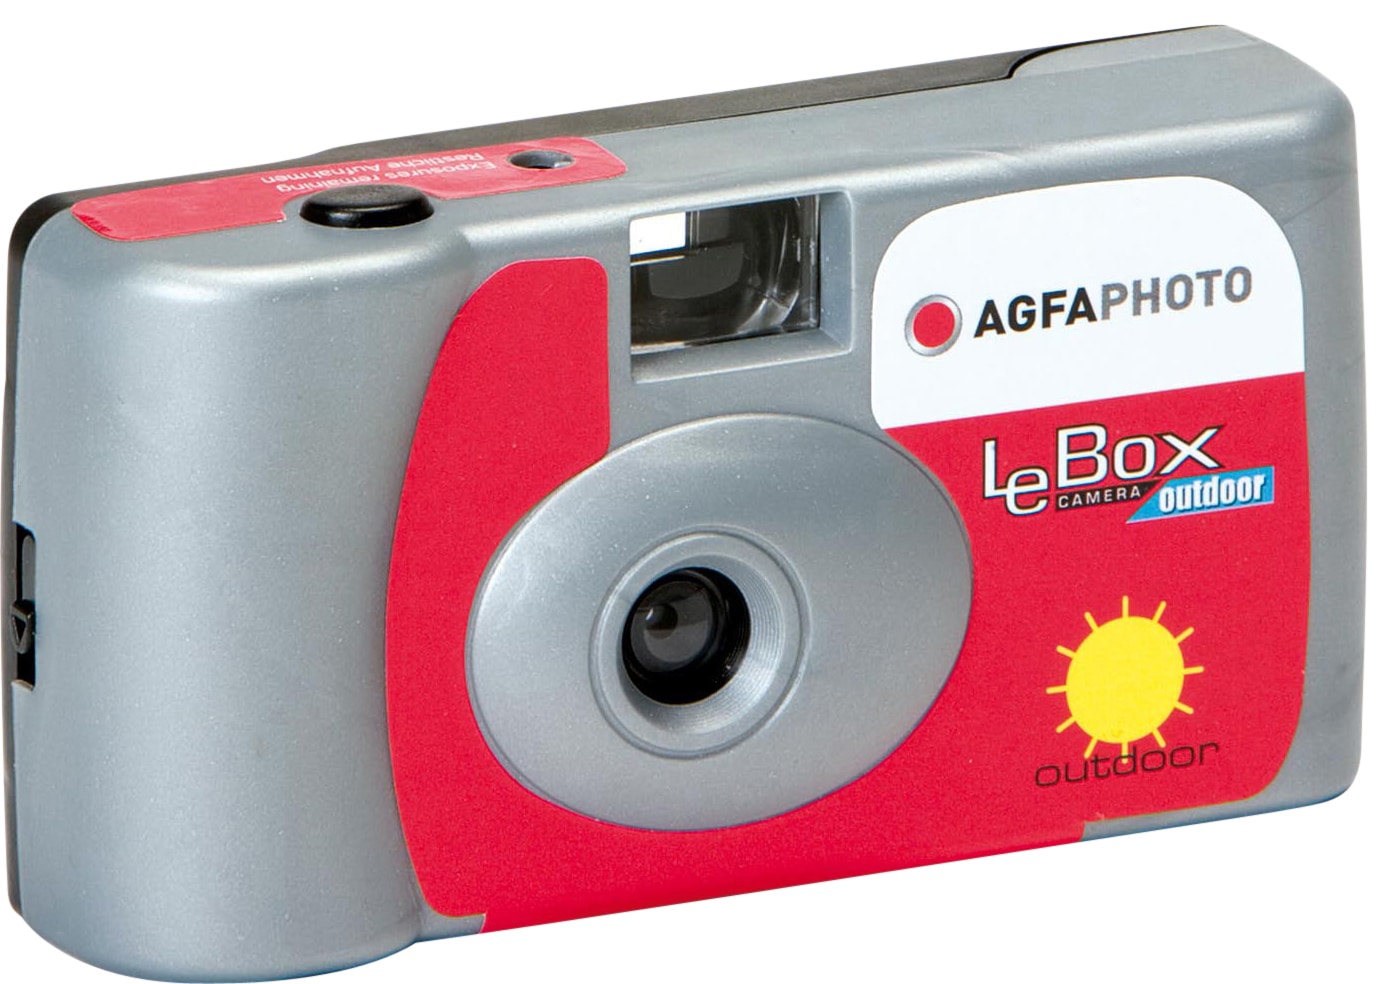 Agfaphoto LeBox Outdoor analog engångskamera - Elgiganten